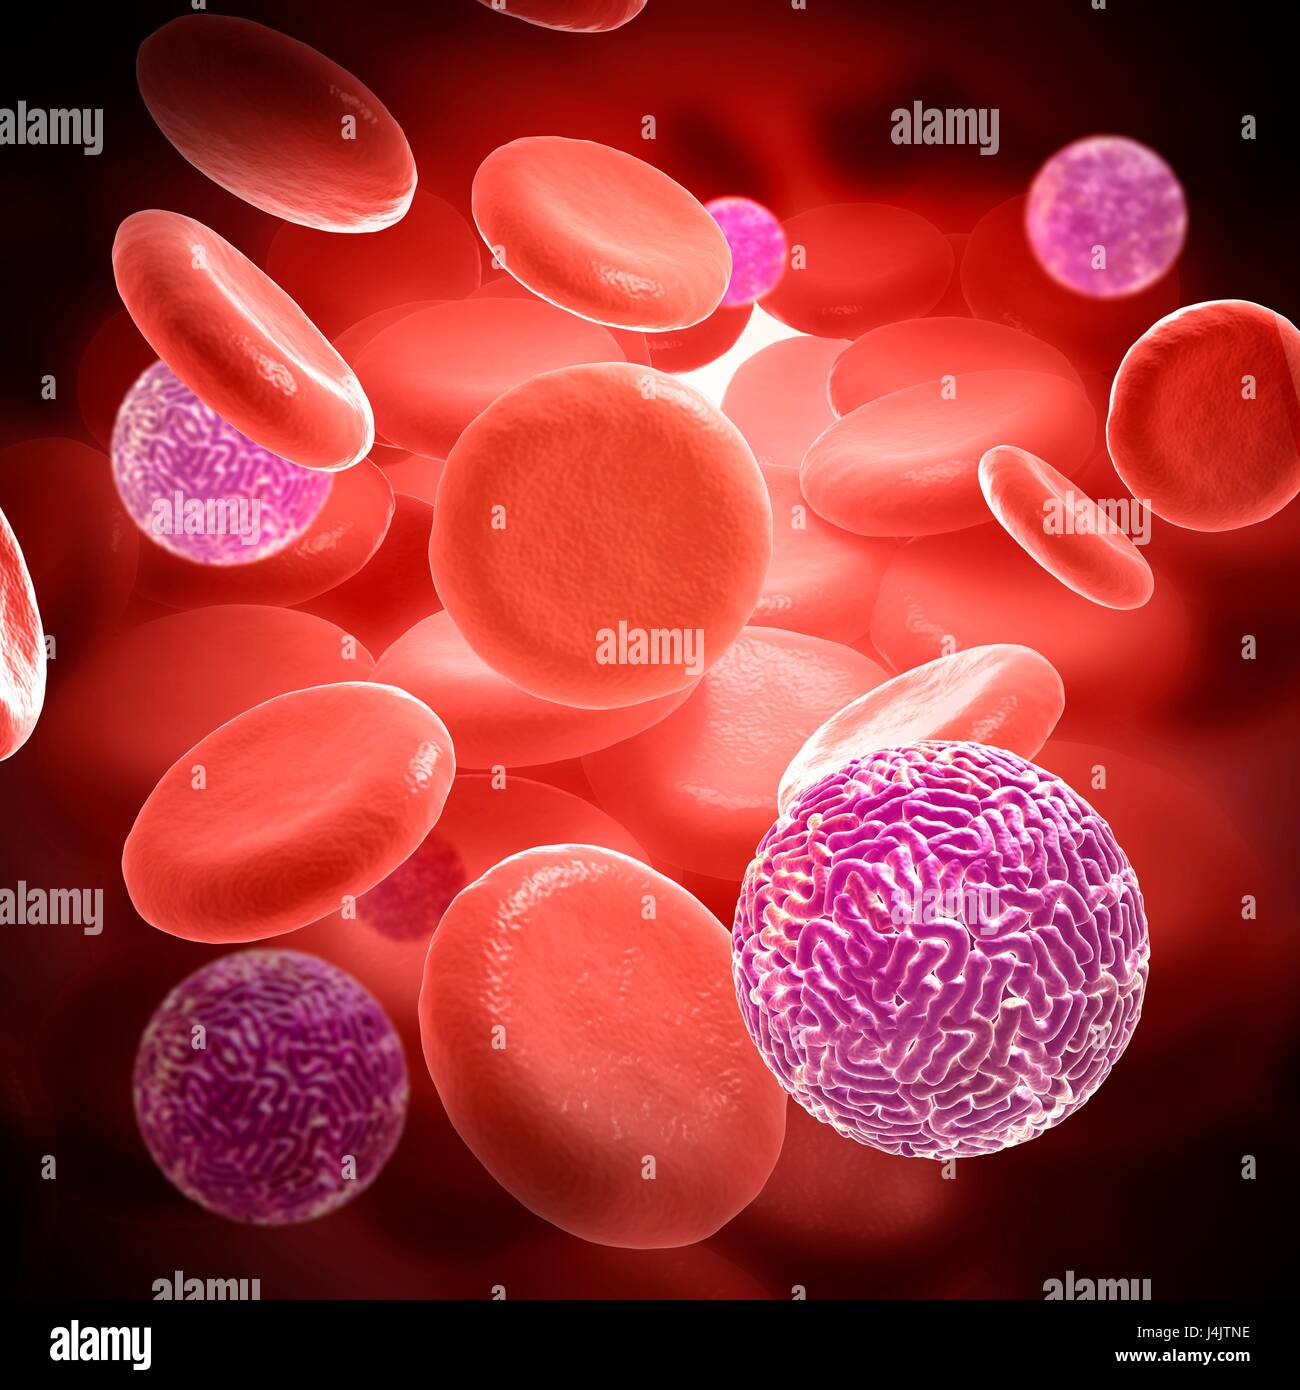 Illustration de particules de virus Sindbis dans le sang. Banque D'Images